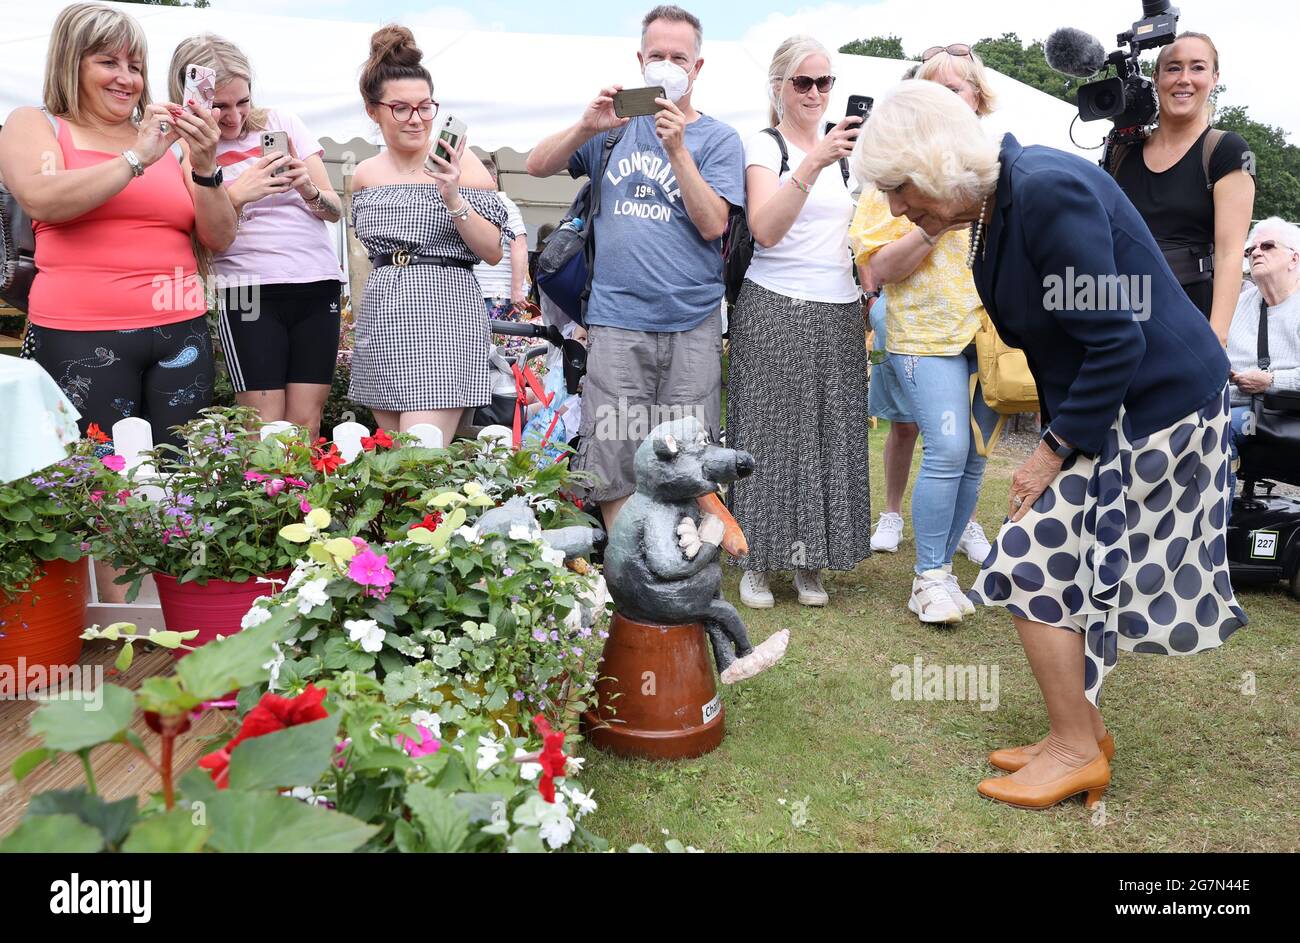 Wellwishers scatta foto mentre la Duchessa di Cornovaglia guarda un gnome giardino chiamato Charles durante una visita al Great Yorkshire Show al Great Yorkshire Showground di Harrogate, North Yorkshire. Data immagine: Giovedì 15 luglio 2021. Foto Stock